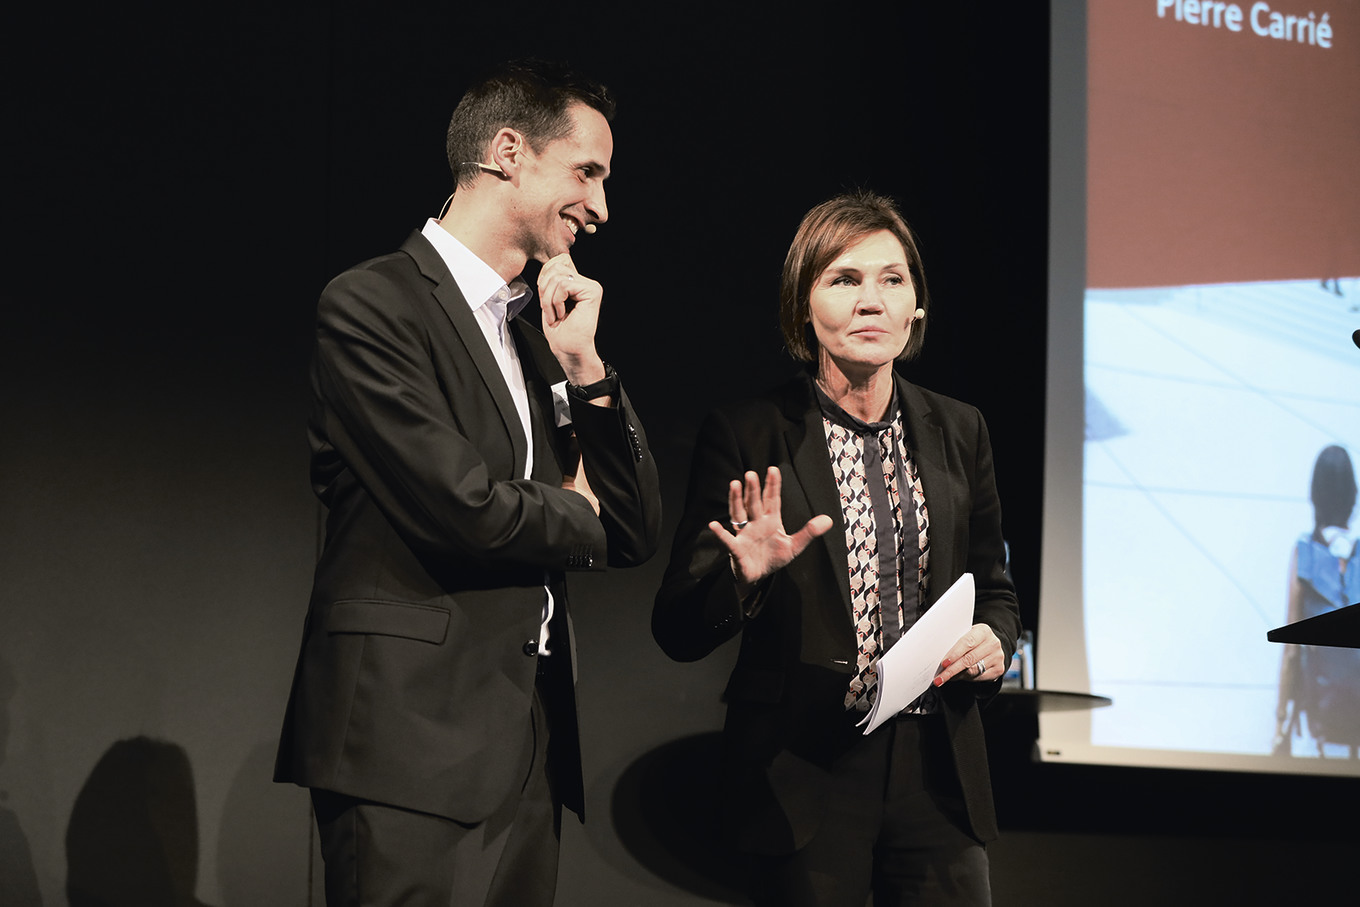 Pierre Carrié und Moderatorin Nathalie Randin.